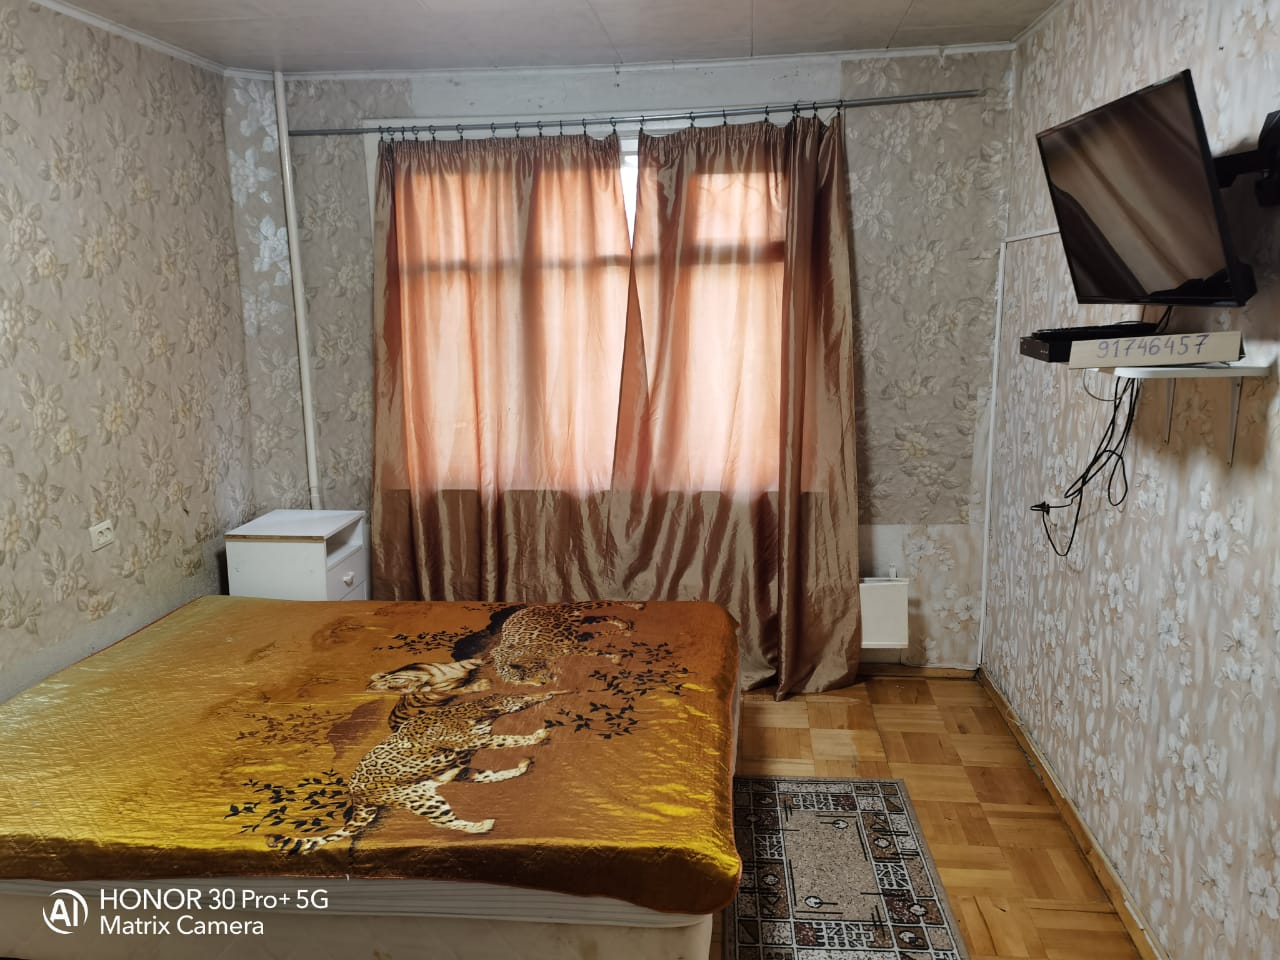 Двухкомнатная квартира на улице Машинцева в Химках. Спальня